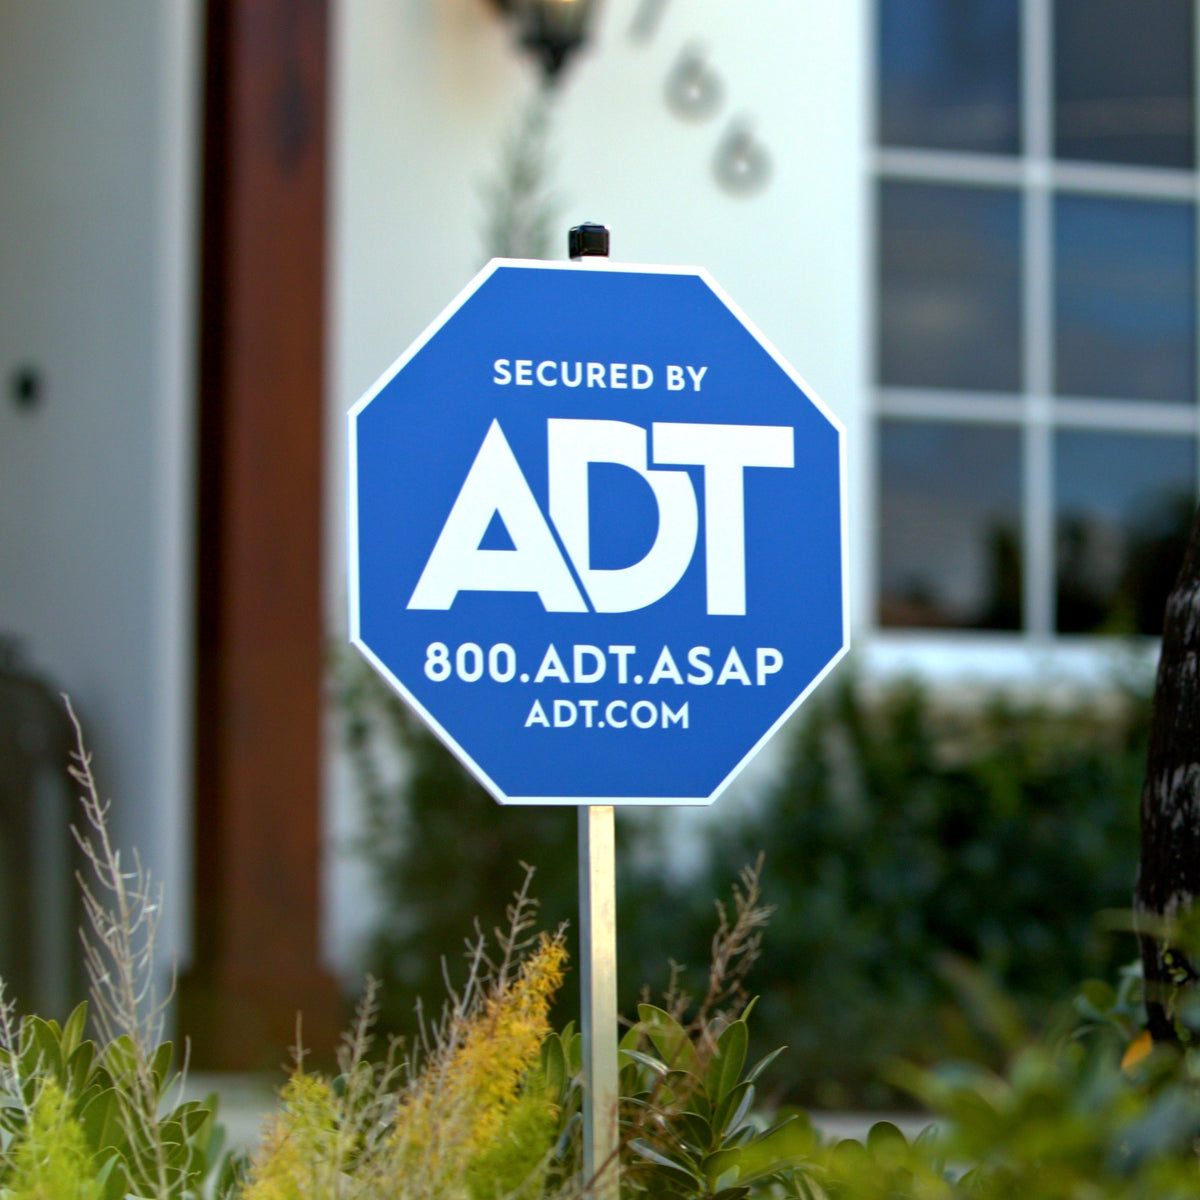 ADT Power Adaptor for Doorbell Installation